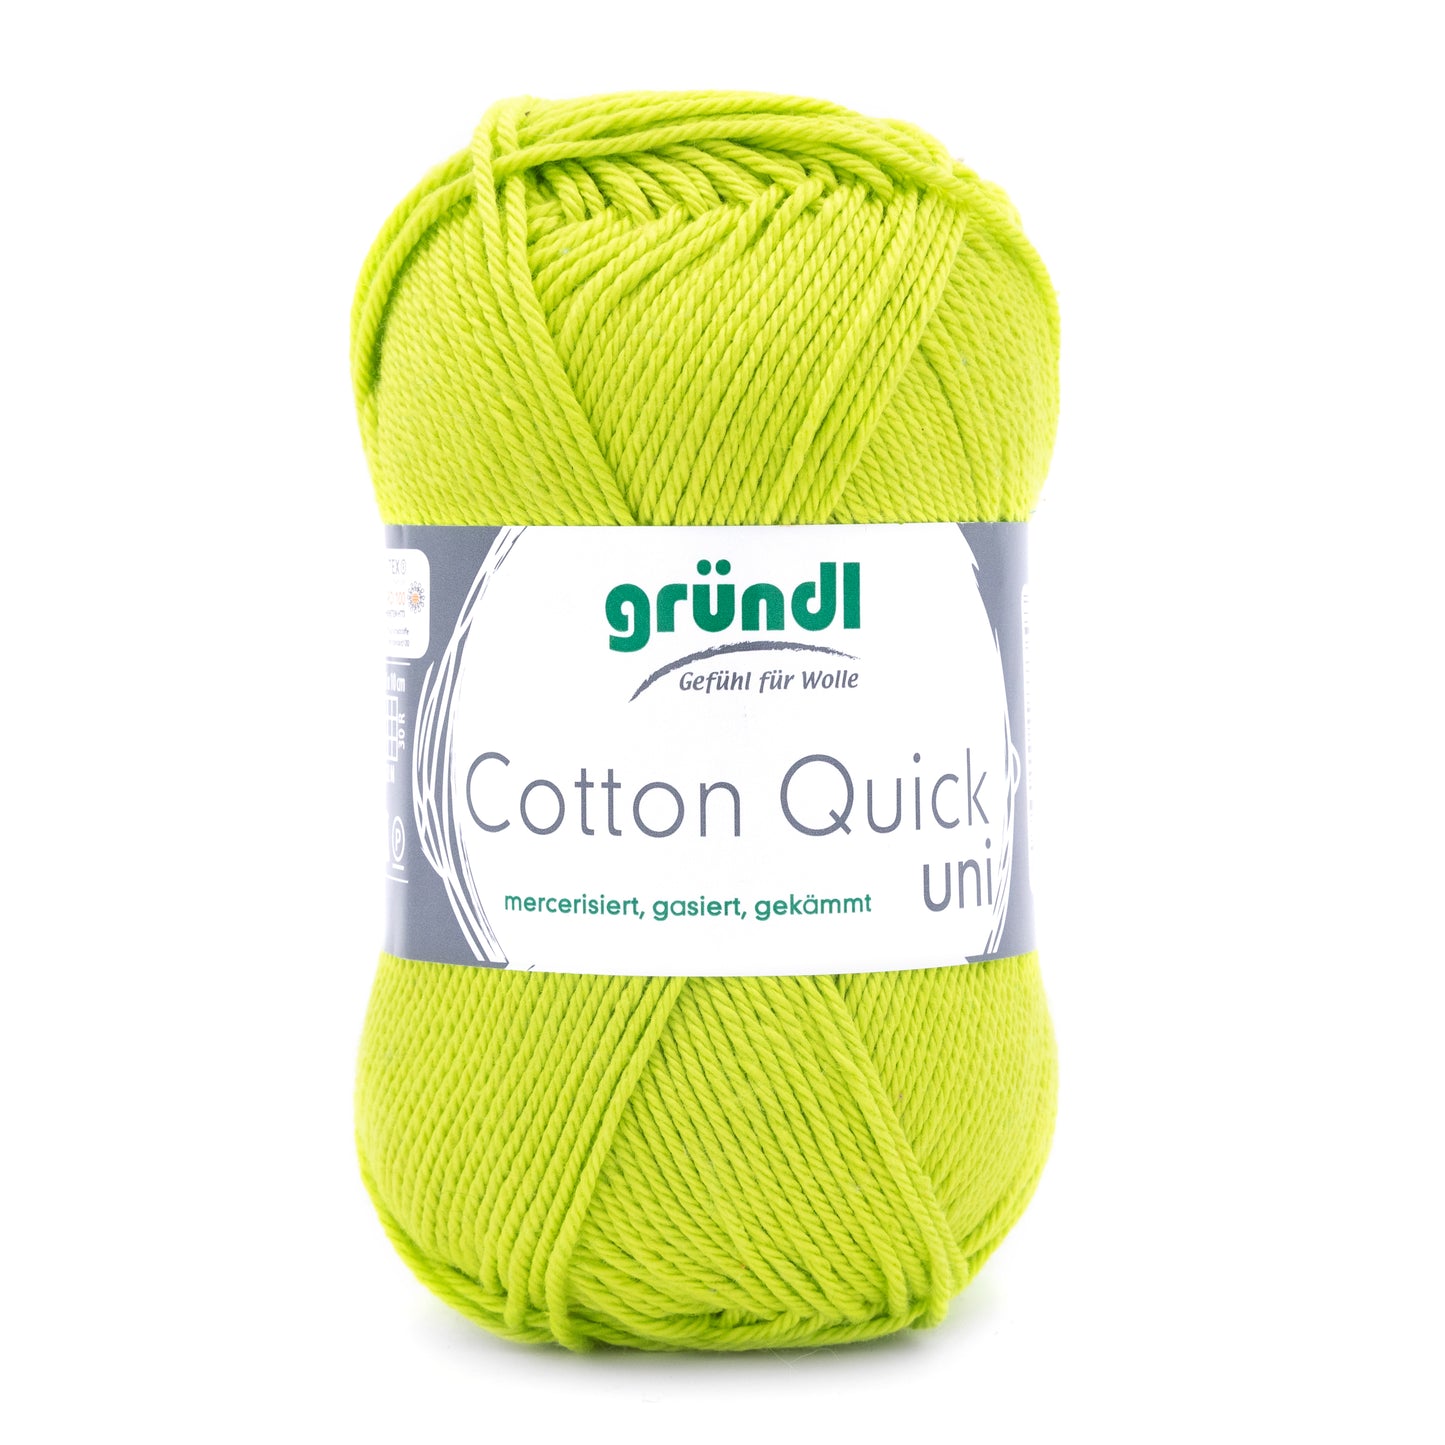 Cotton Quick Uni mercerisé by Gründl- pelotes de 50g/125m